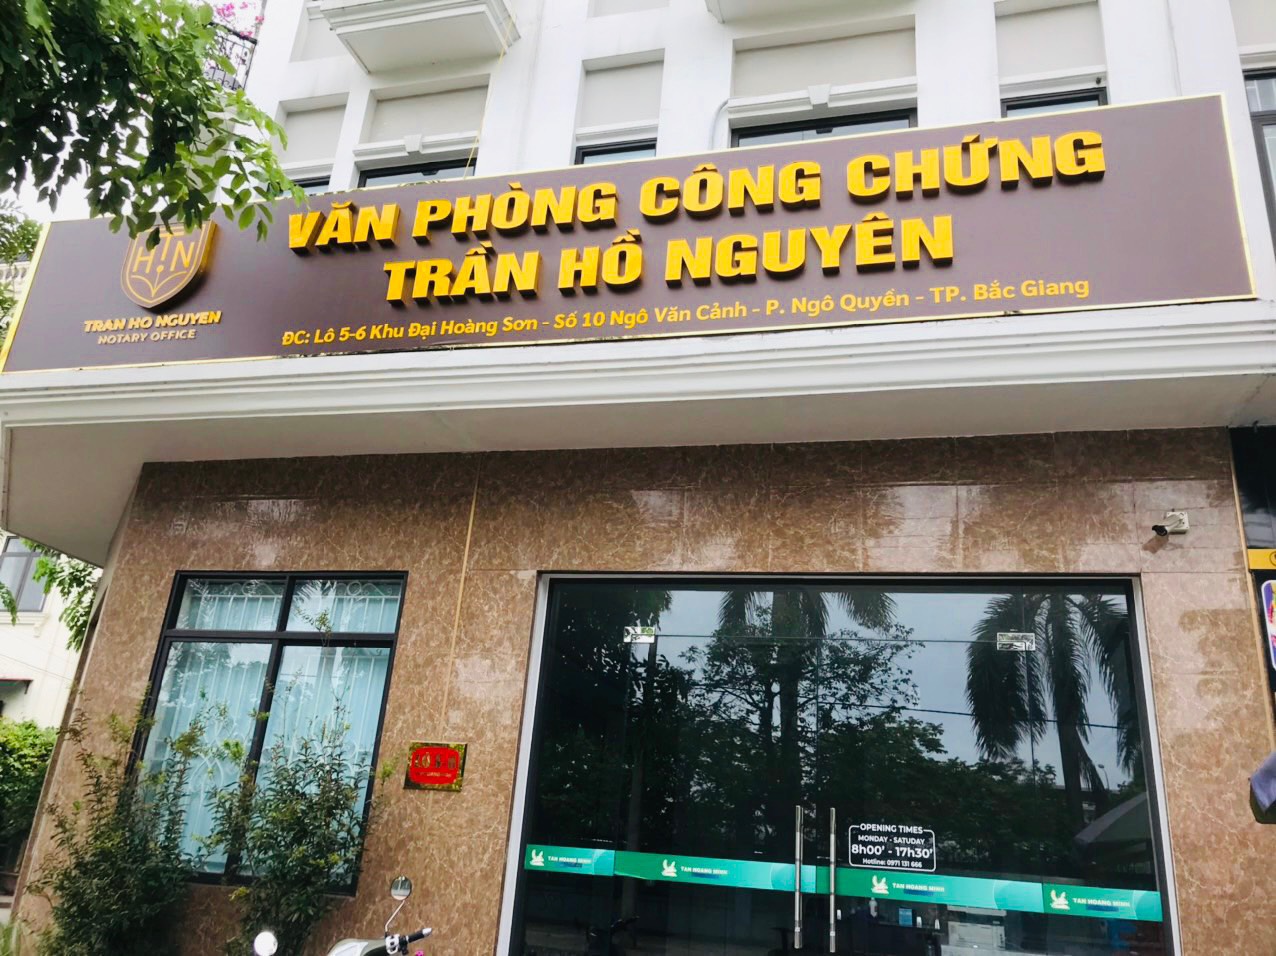 Liên hệ Văn phòng công chứng Trần Hồ Nguyên thông tin địa chỉ số điện thoại